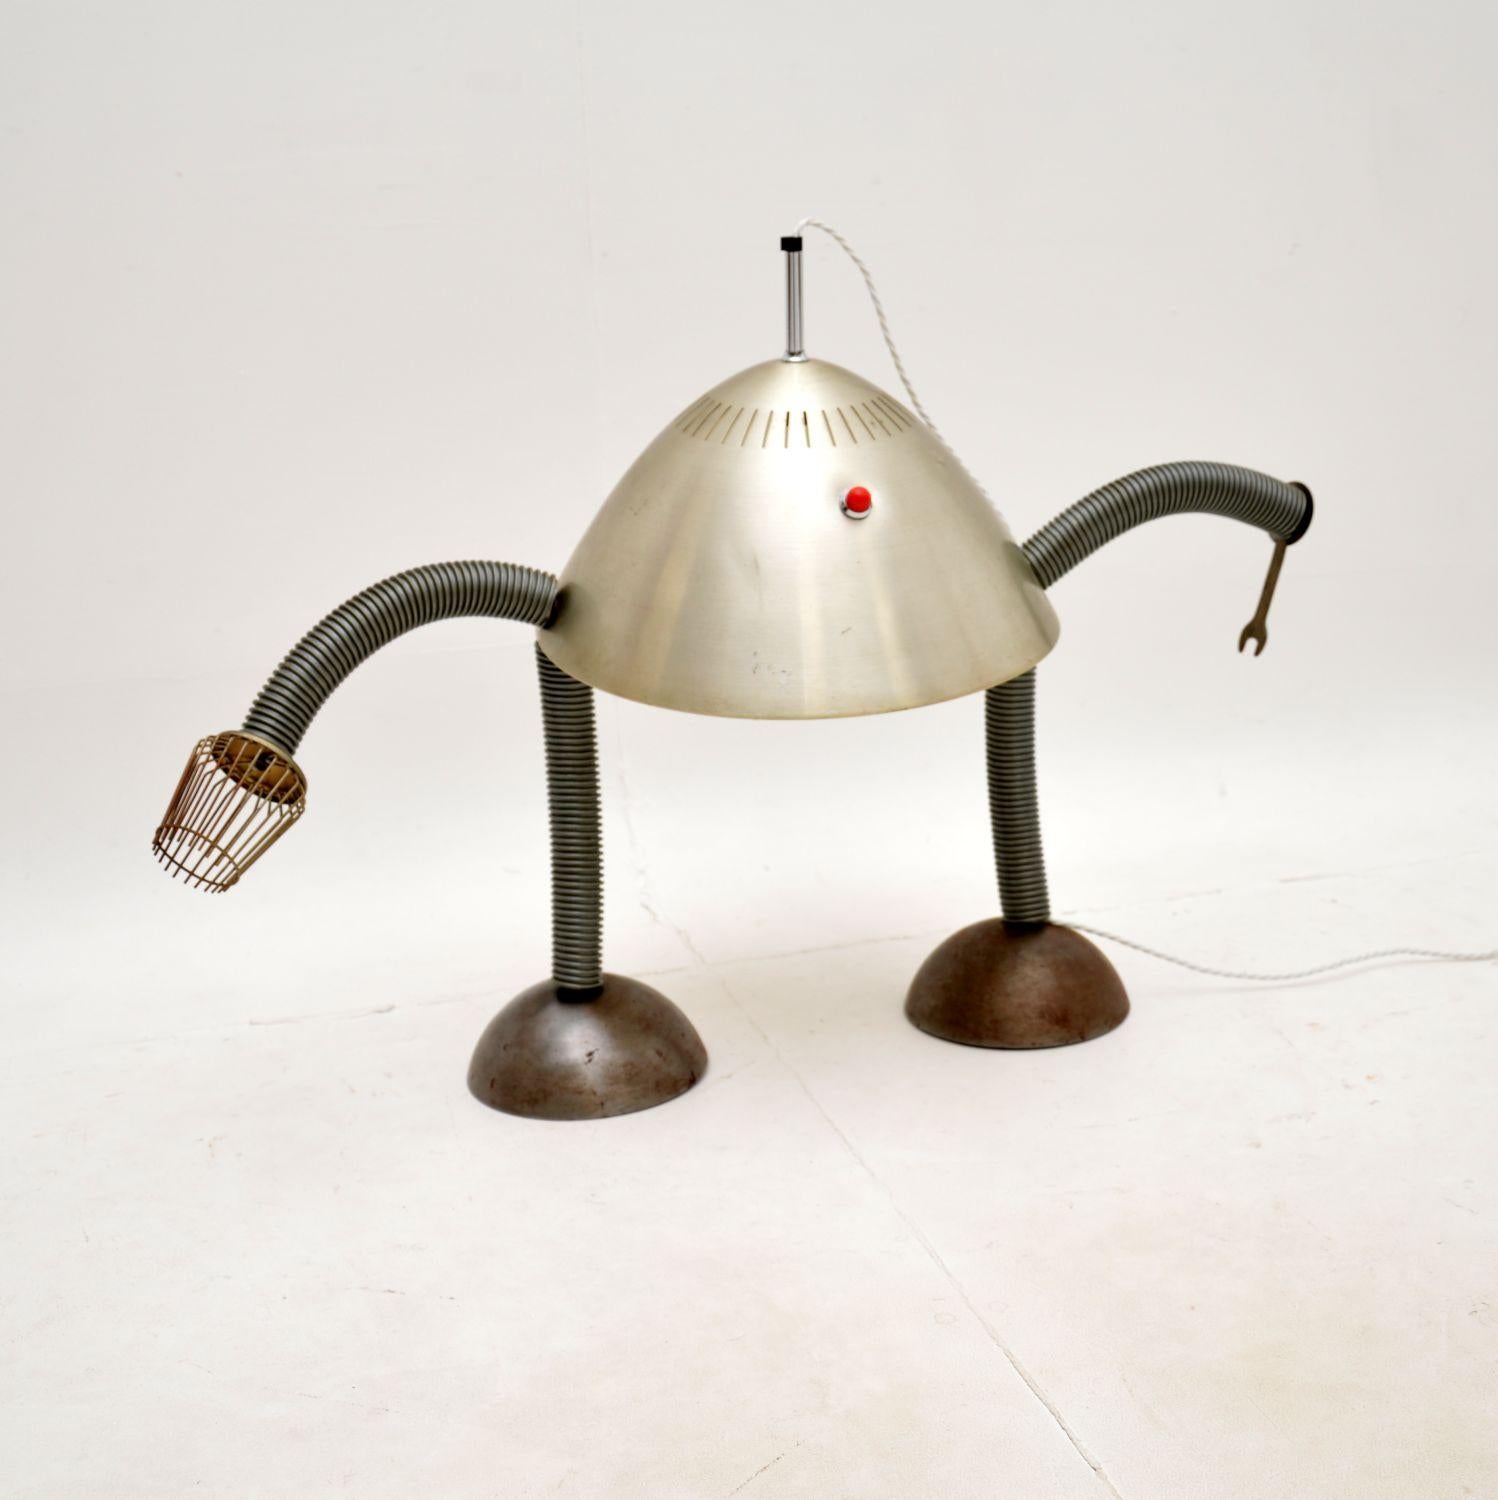 Une lampe de table robot vintage unique et très inhabituelle. Il a été fabriqué à la main par un artisan dans les années 1960-70.

Quelqu'un l'a fabriqué chez lui à partir de pièces d'objets ménagers, notamment un bouchon de radiateur Pifco pour la